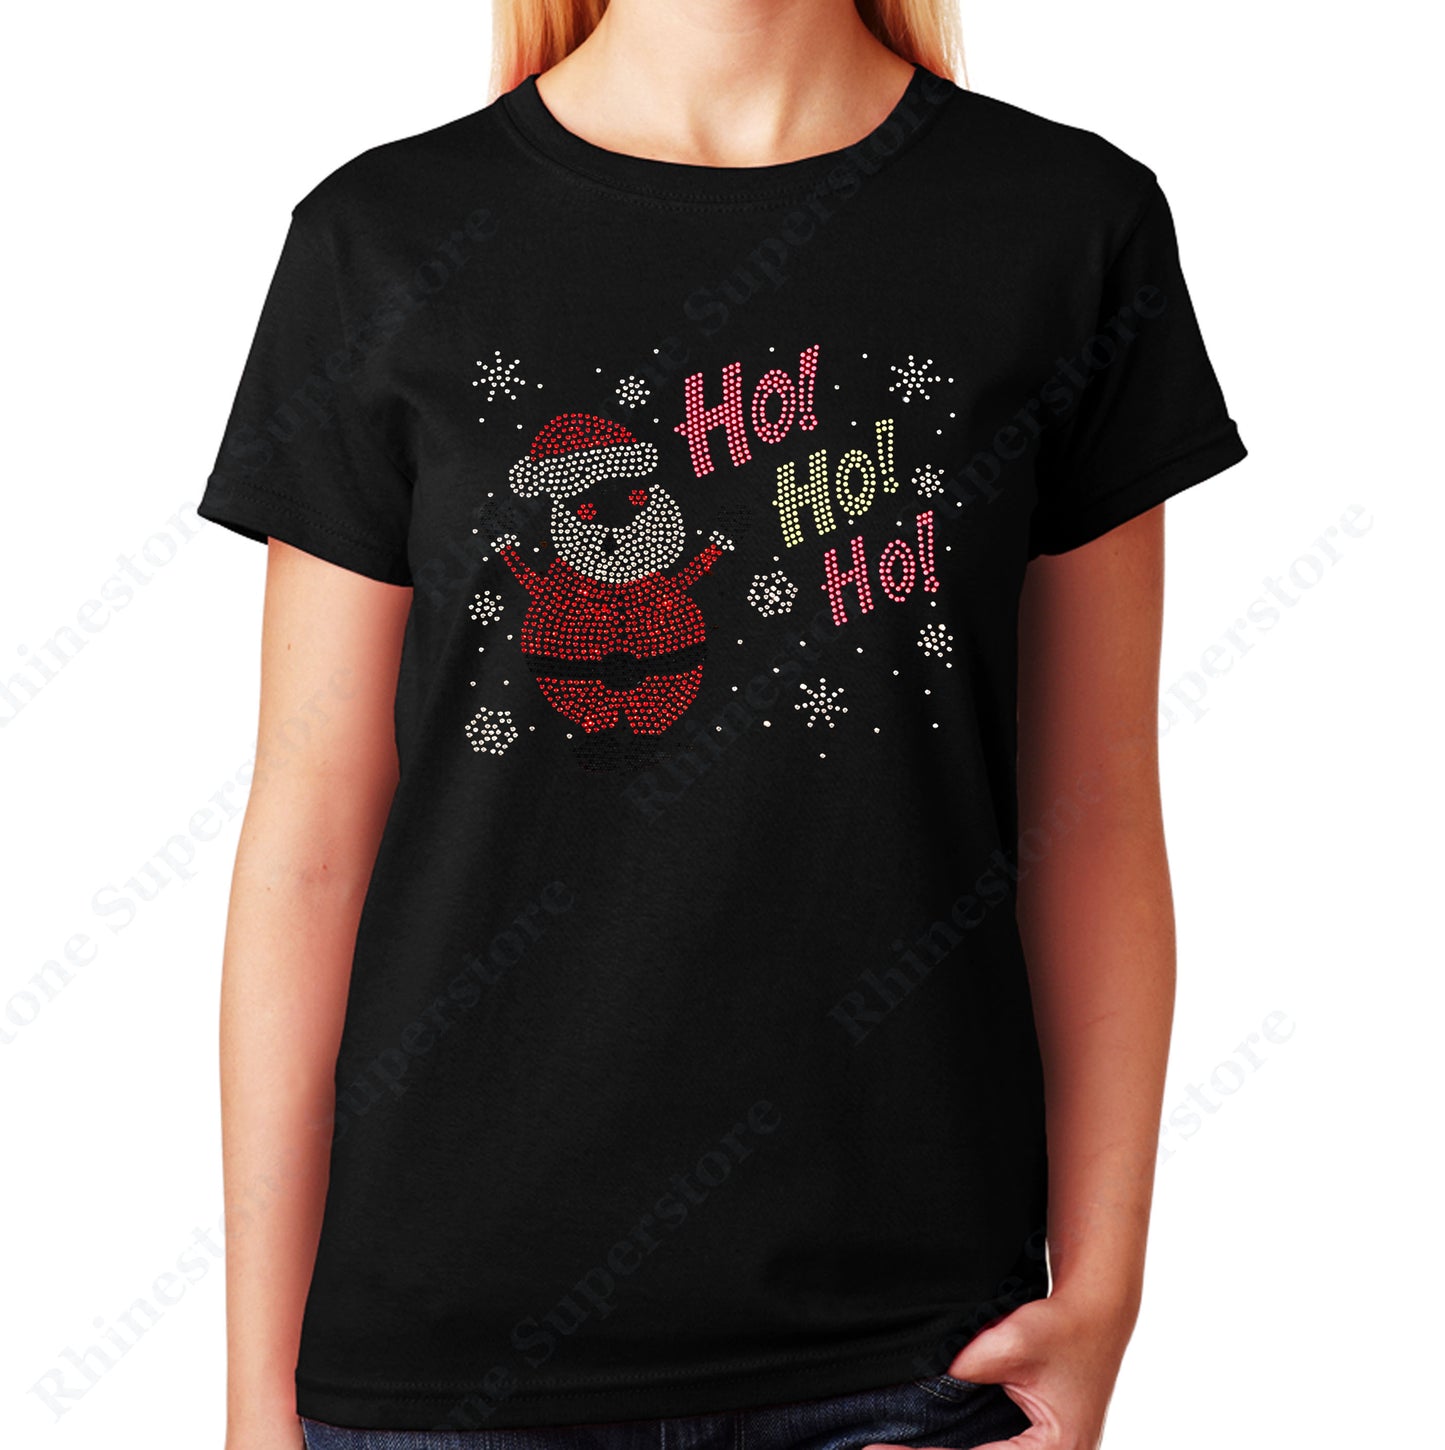 Unisex T-Shirt with Santa with Ho Ho Ho in Rhinestones